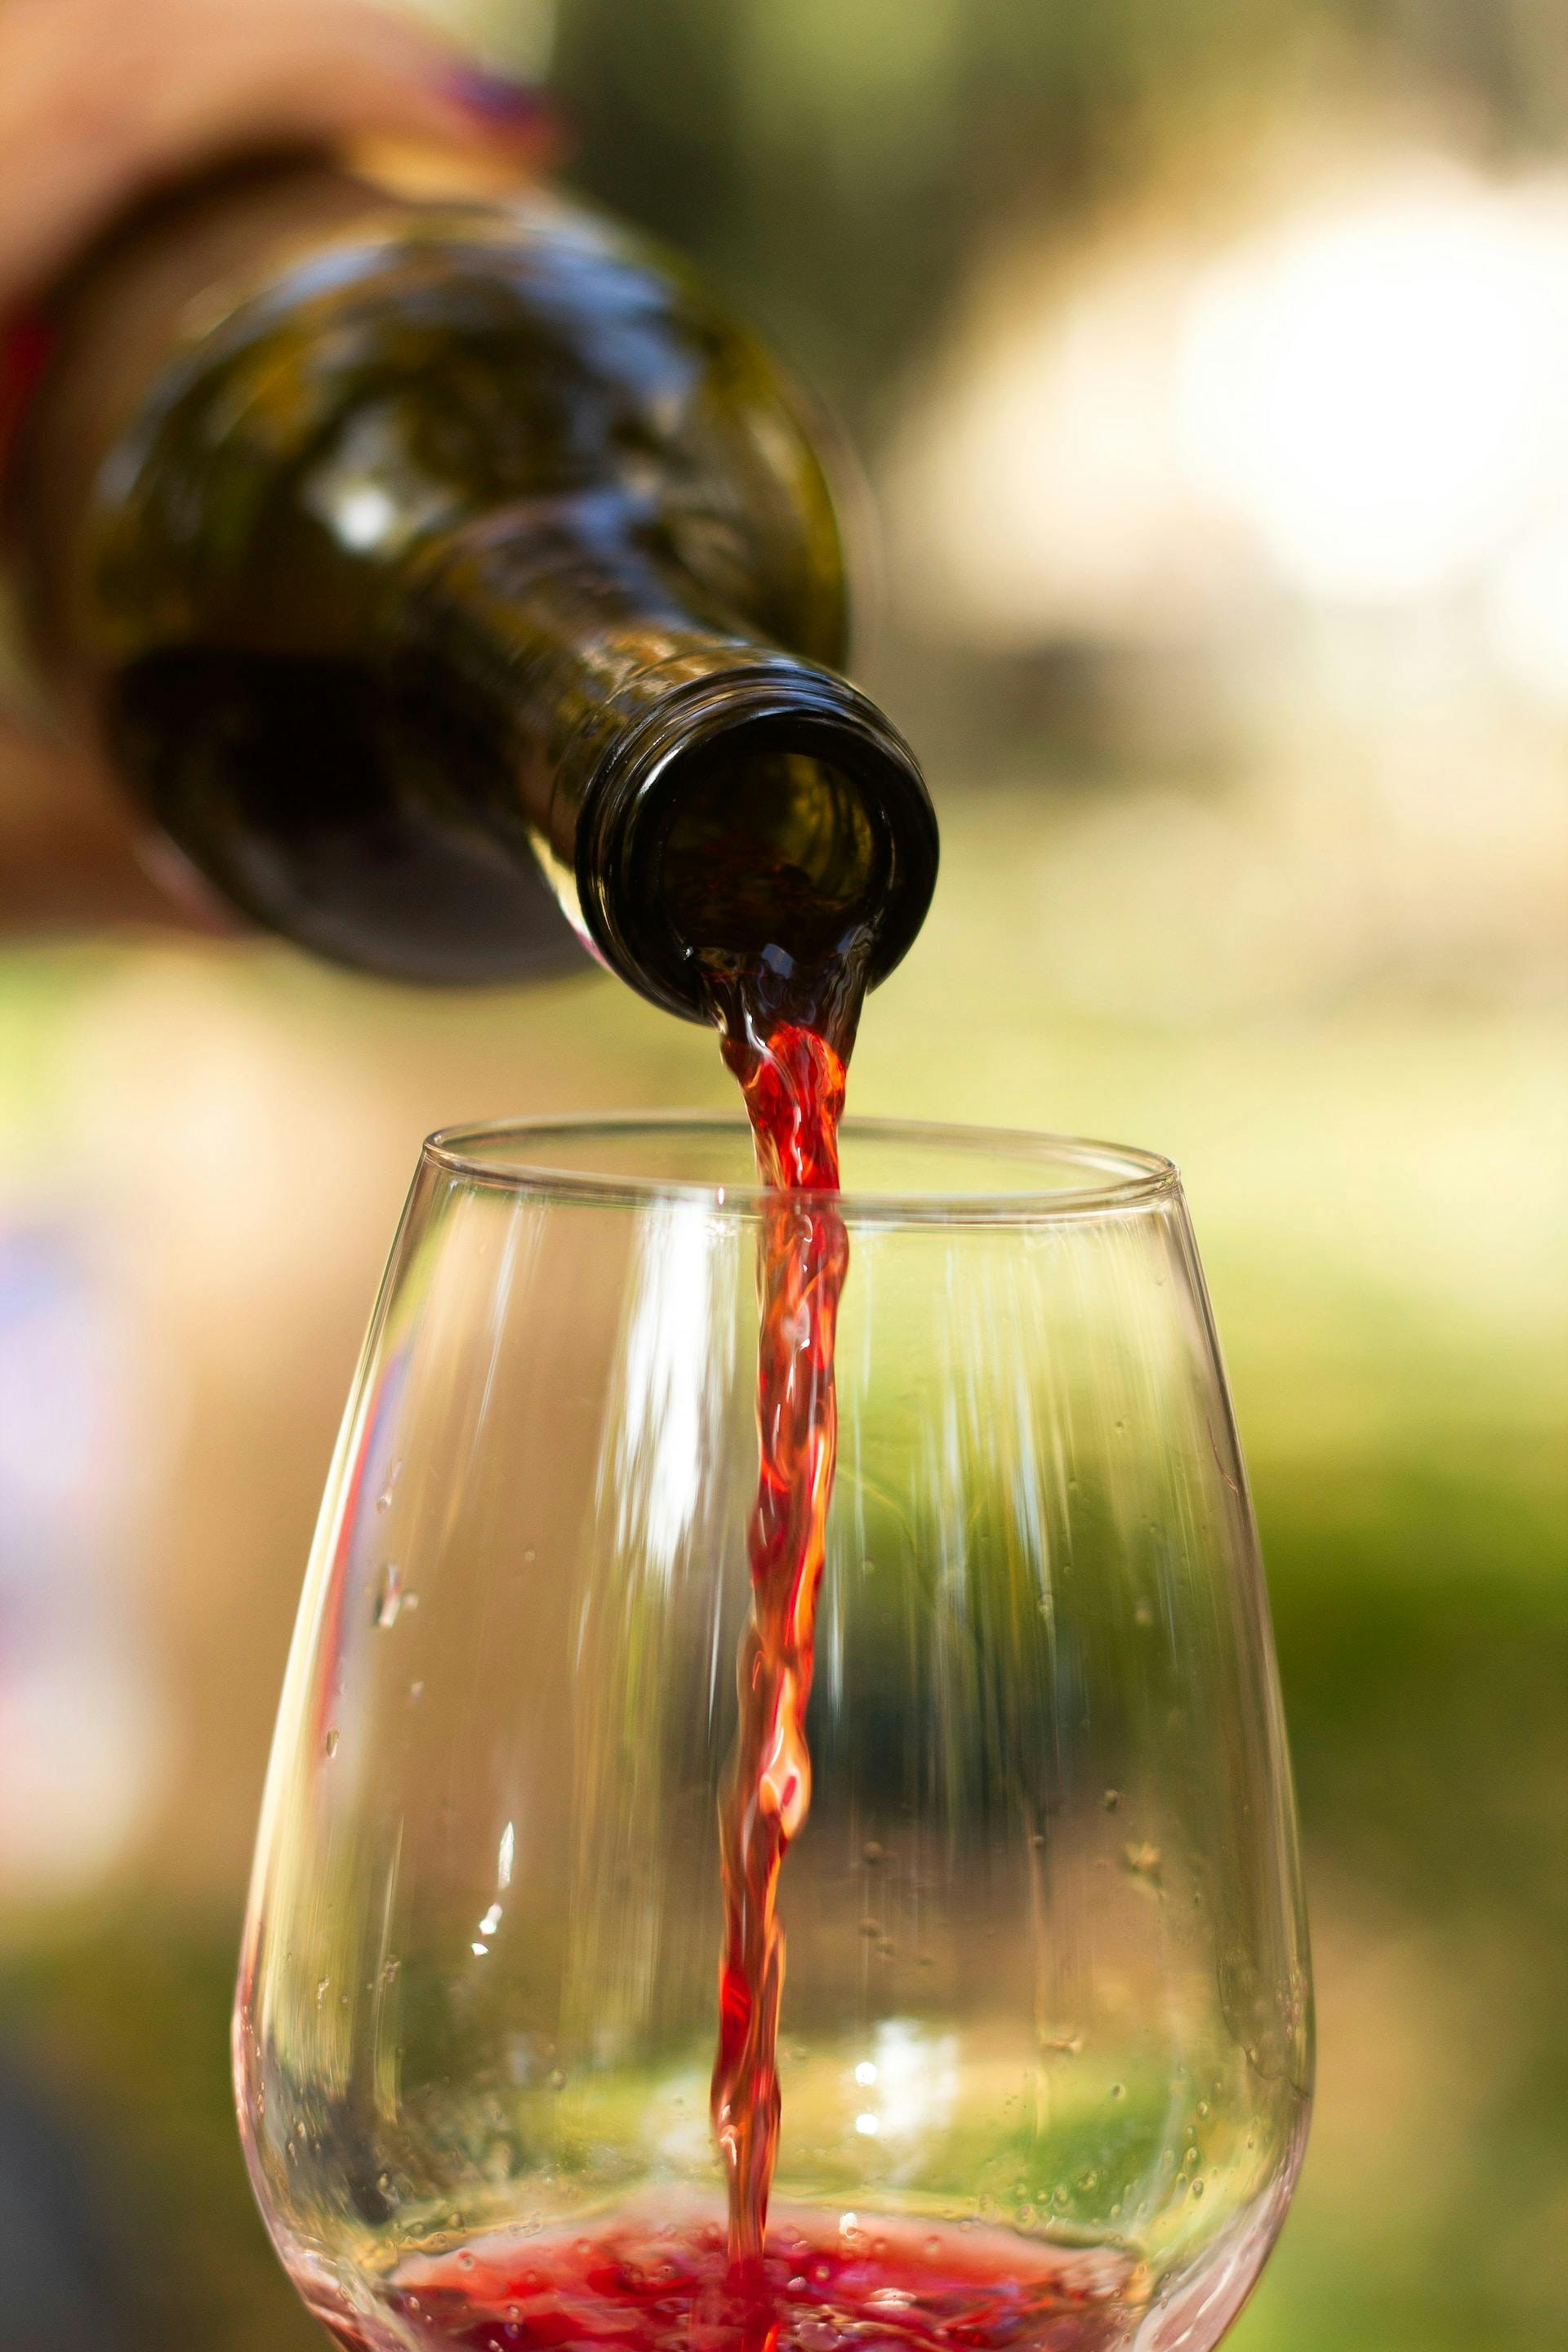 In Weinglas wird rote Flüssigkeit aus Weinflasche eingefüllt